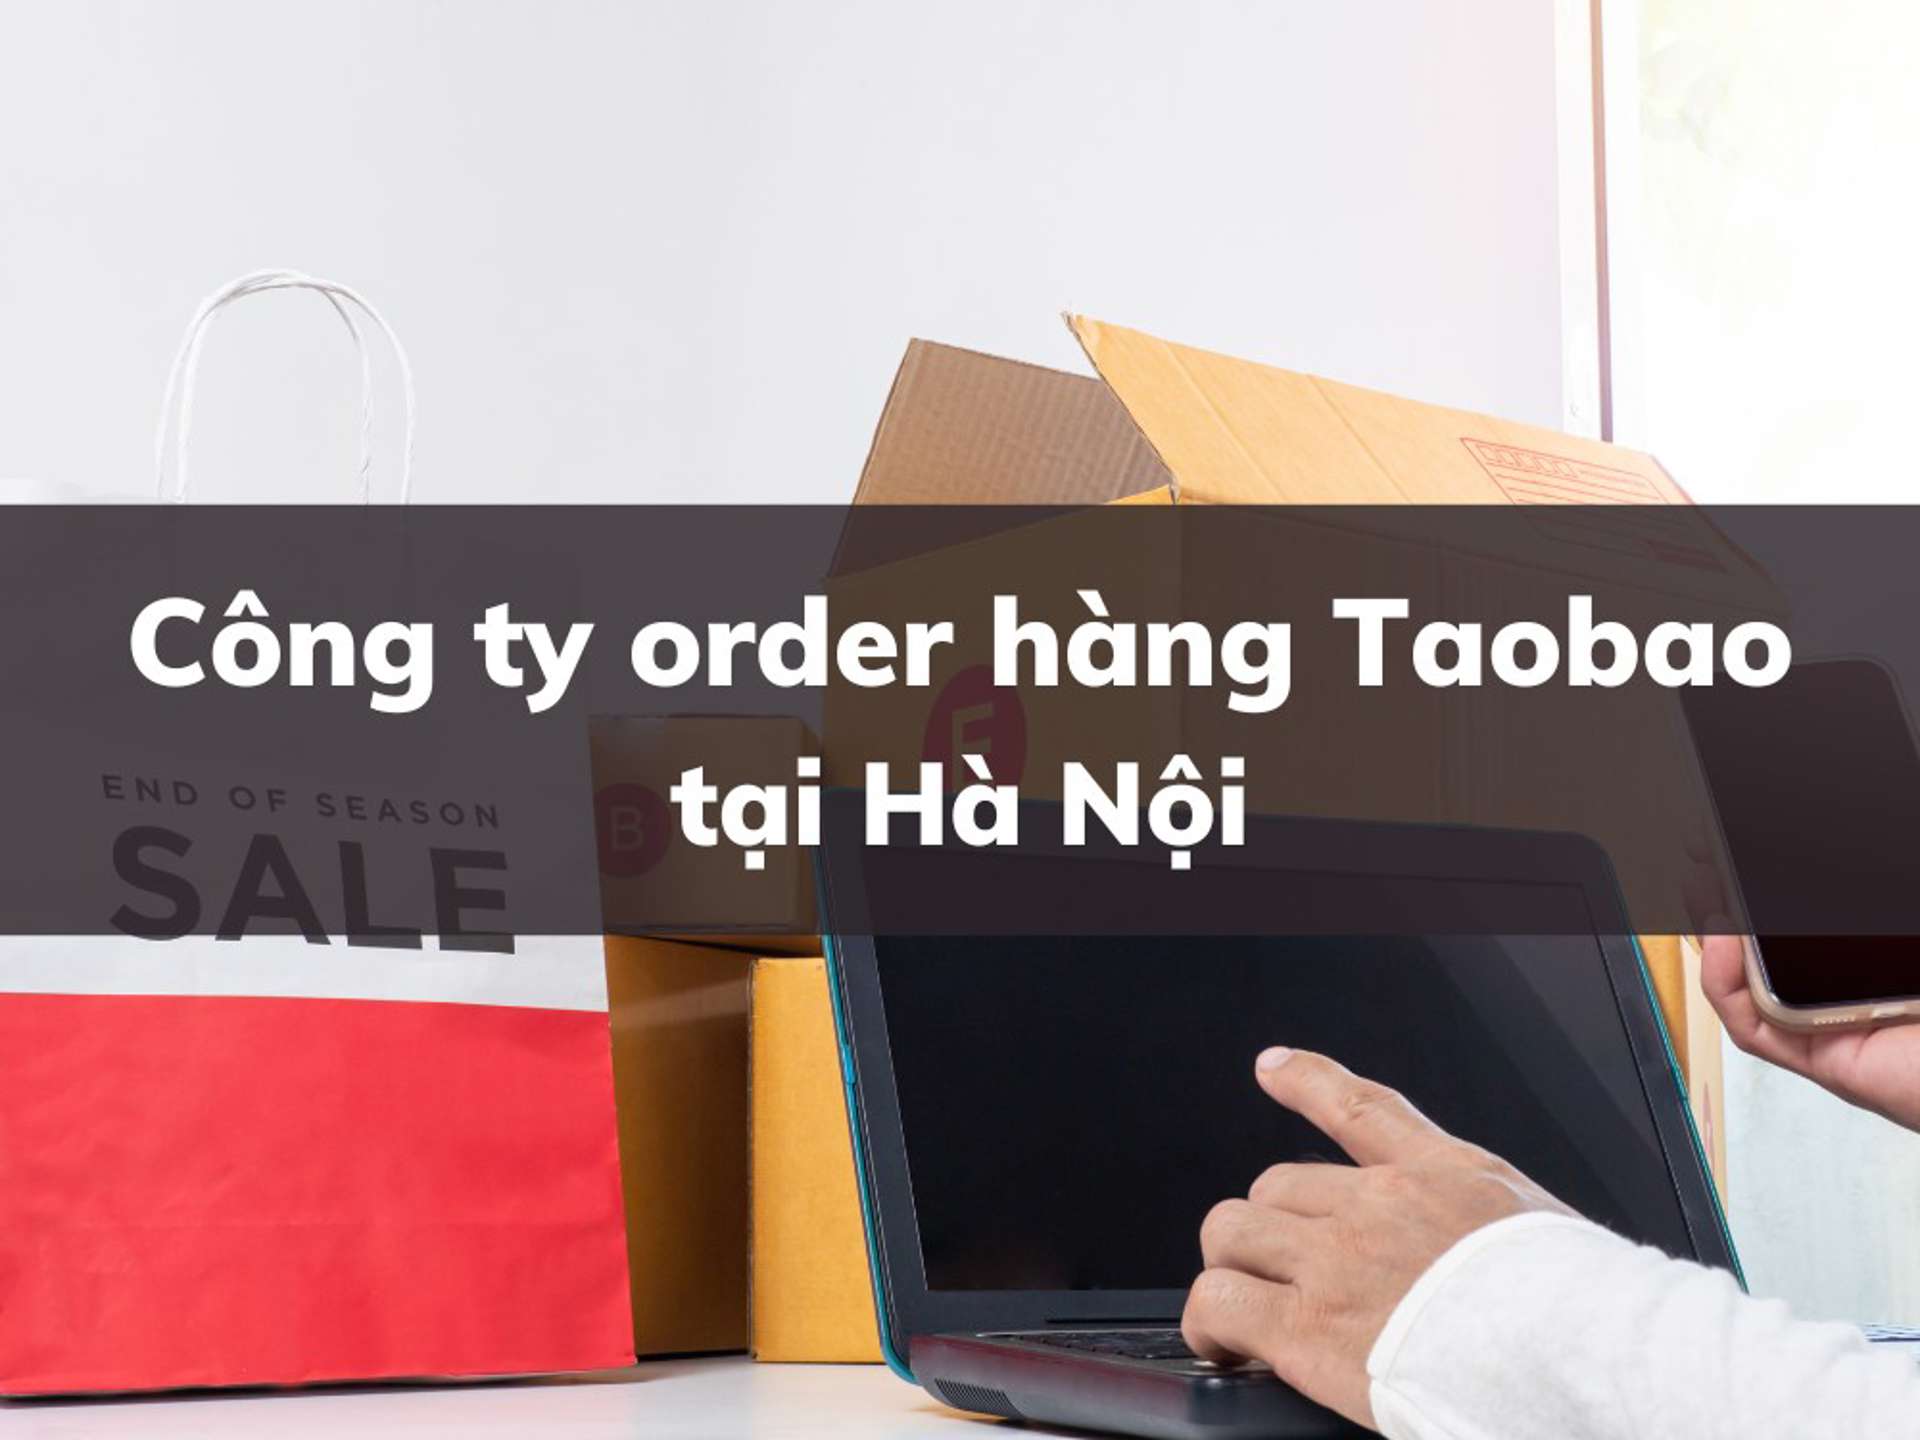 TOP 5 công ty nhận order hàng Taobao uy tín tại Hà Nội